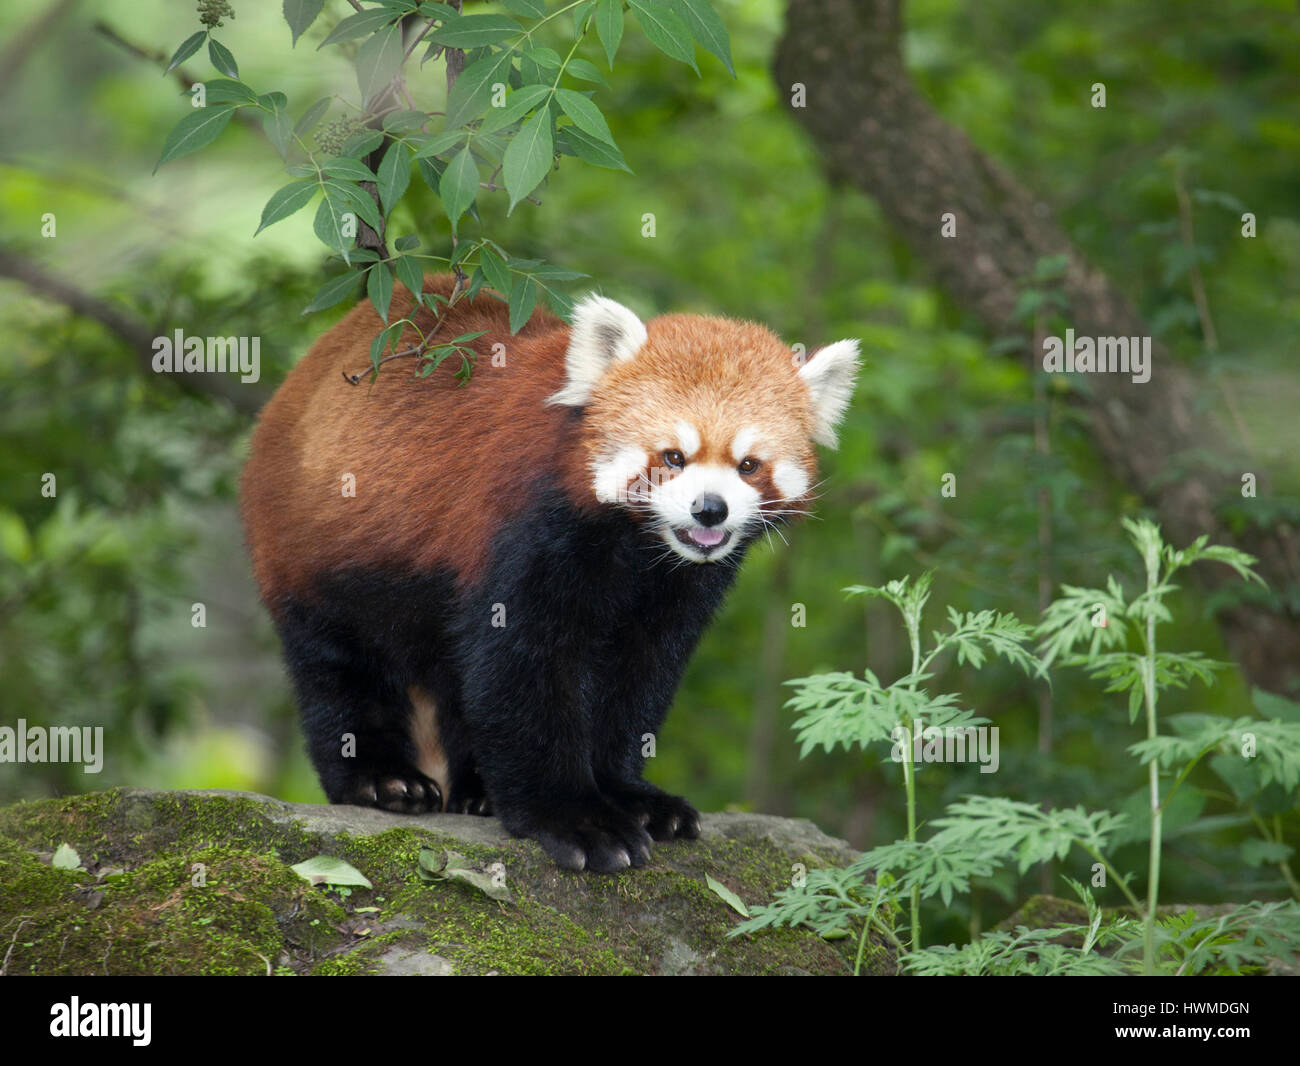 Panda rouge (Ailurus fulgens) debout sur un rocher dans la forêt montagnarde de la réserve naturelle de Wolong, province du Sichuan, Chine Banque D'Images